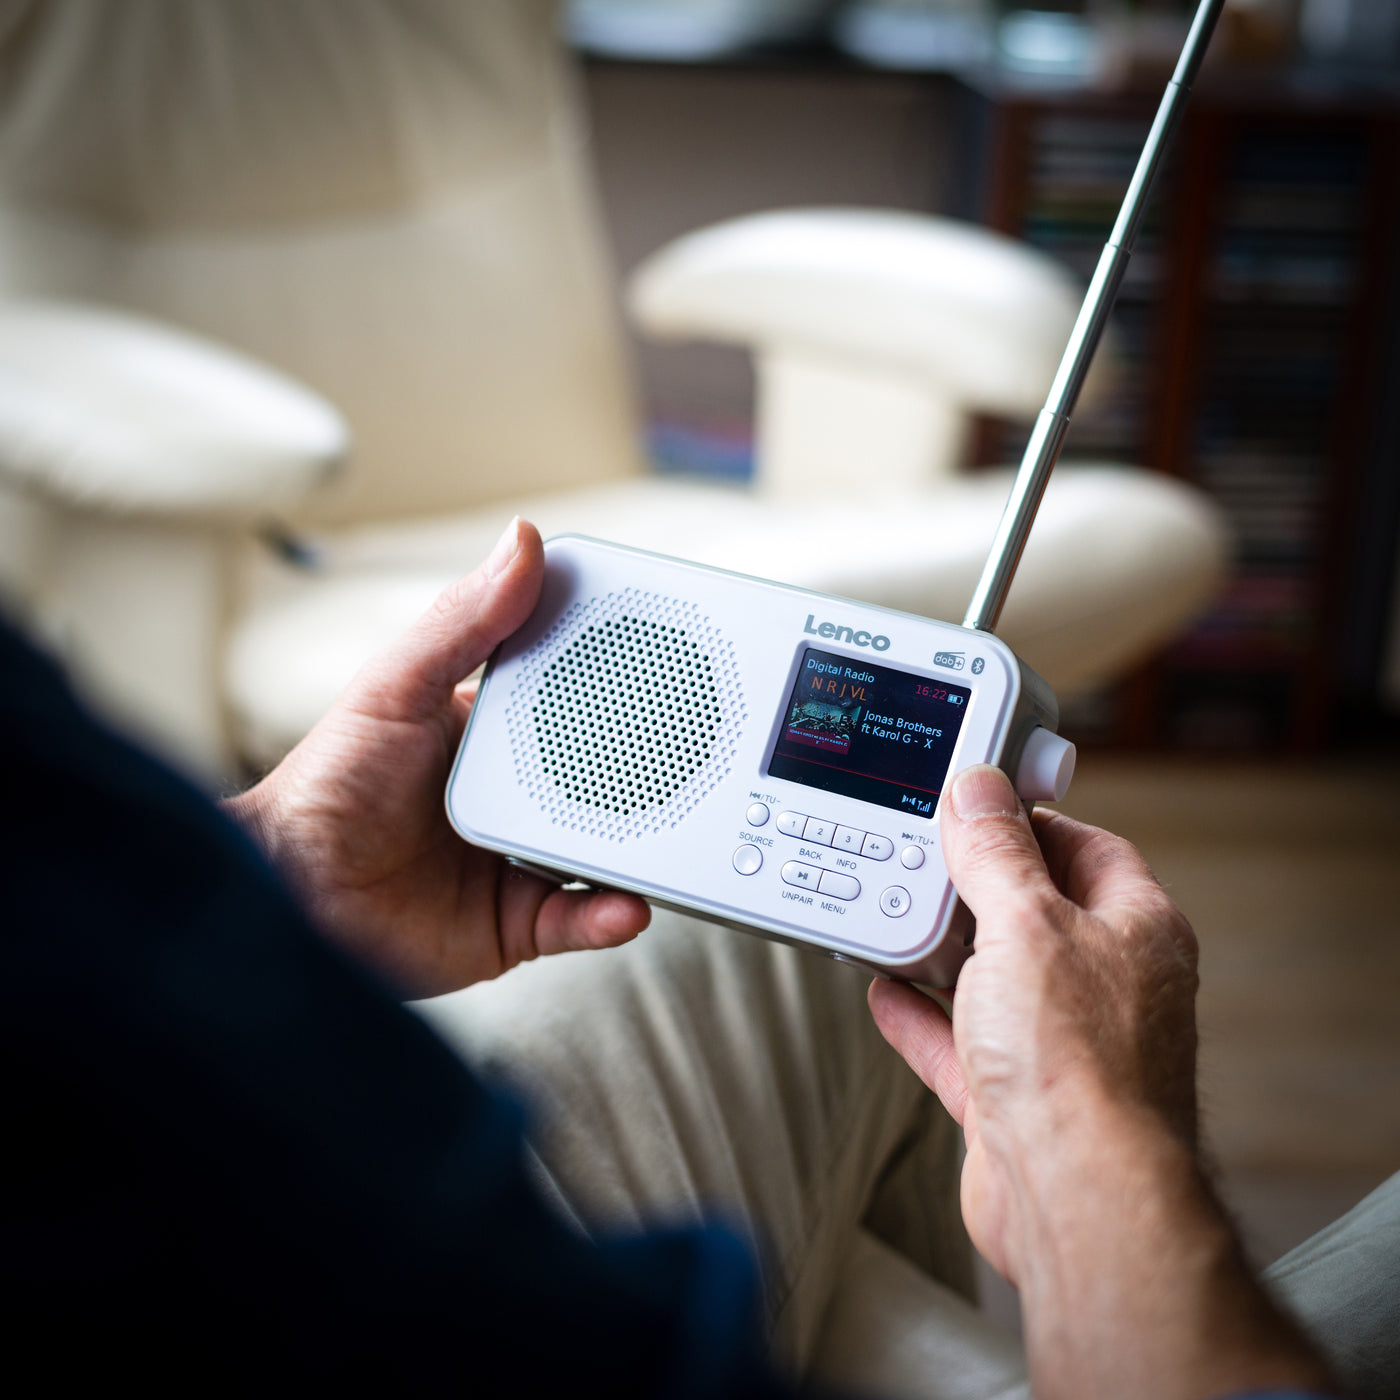 Lenco PDR-035WH - Radio DAB+/FM avec Bluetooth® - Blanc